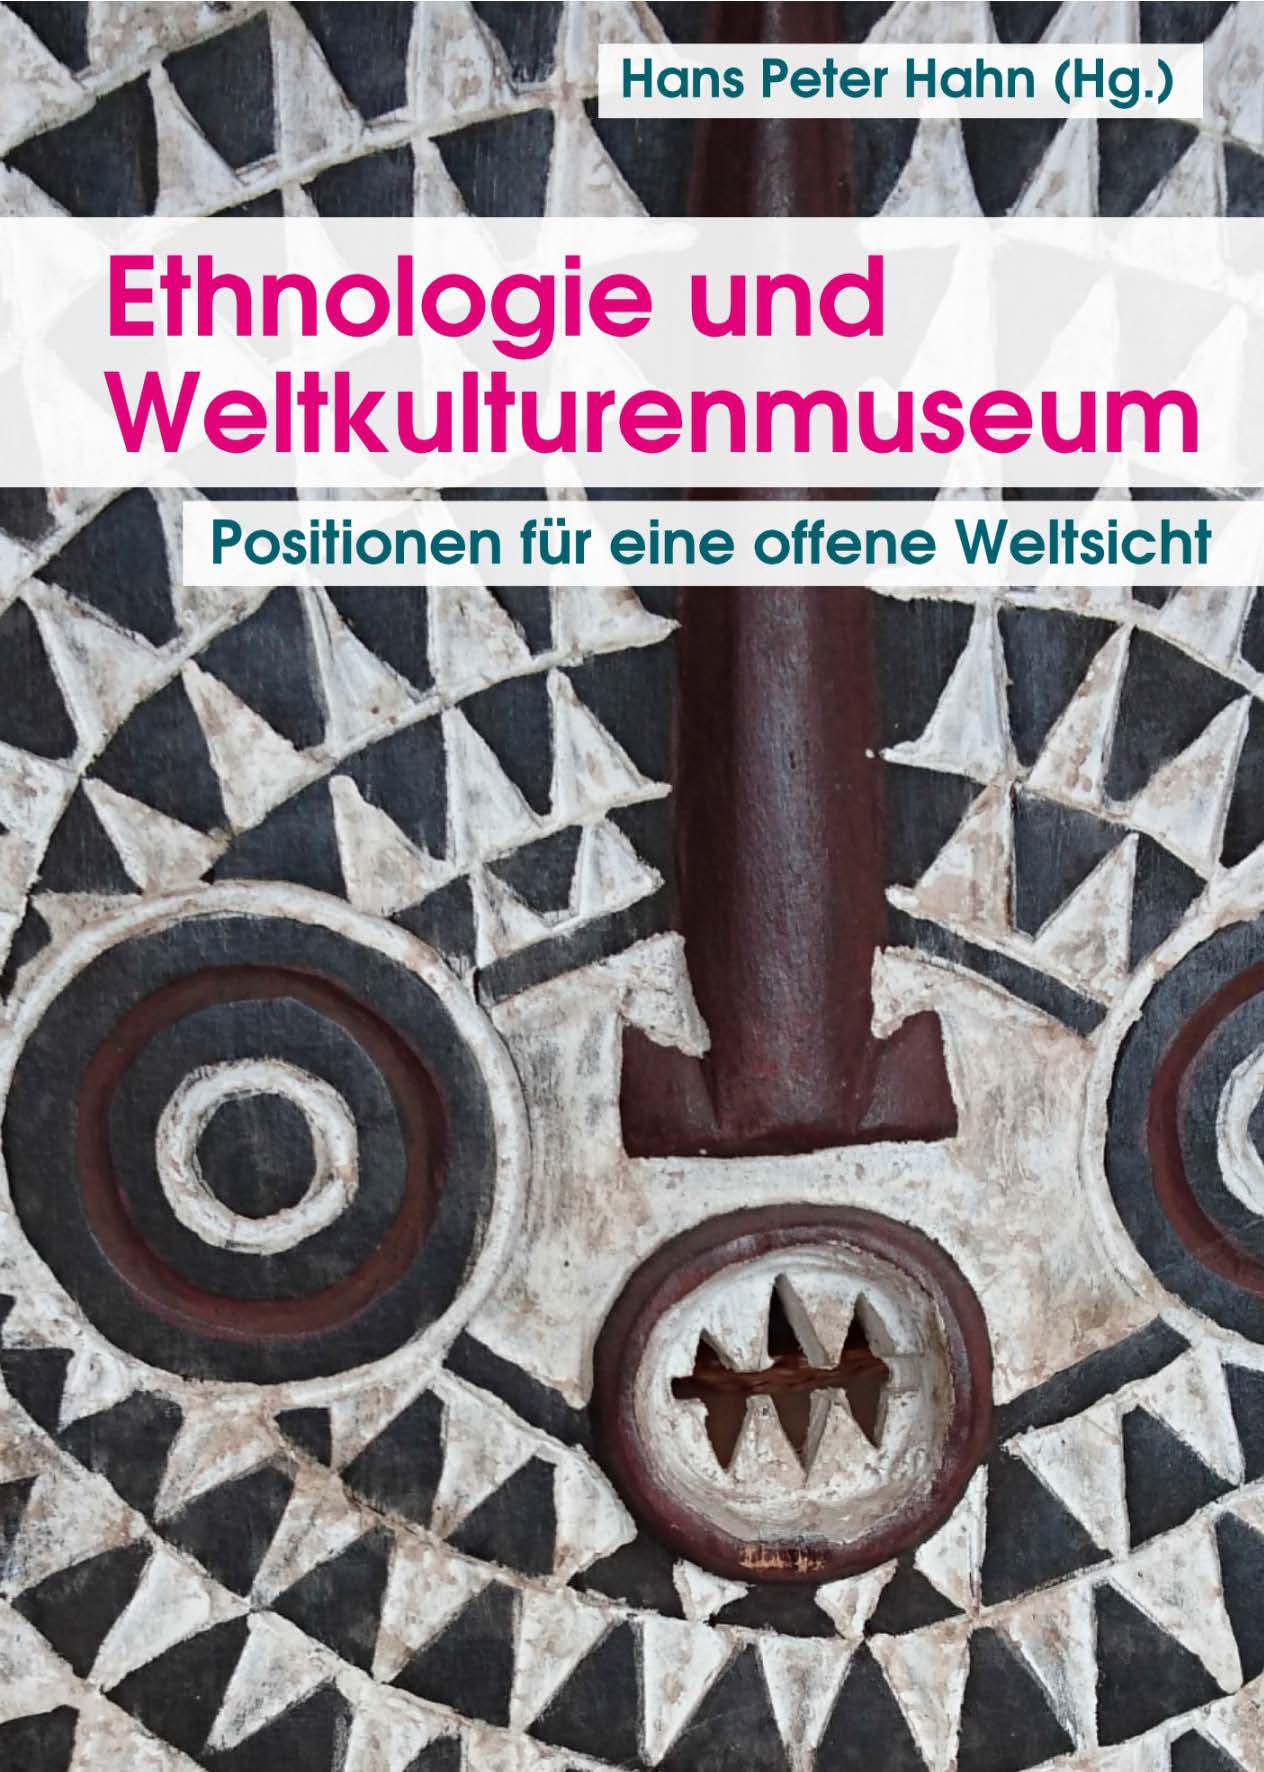 Helmut Groschwitz / Paola Ivanov / Thomas Laely / Hans Peter Hahn (Hg.) Ethnologie und Weltkulturenmuseum